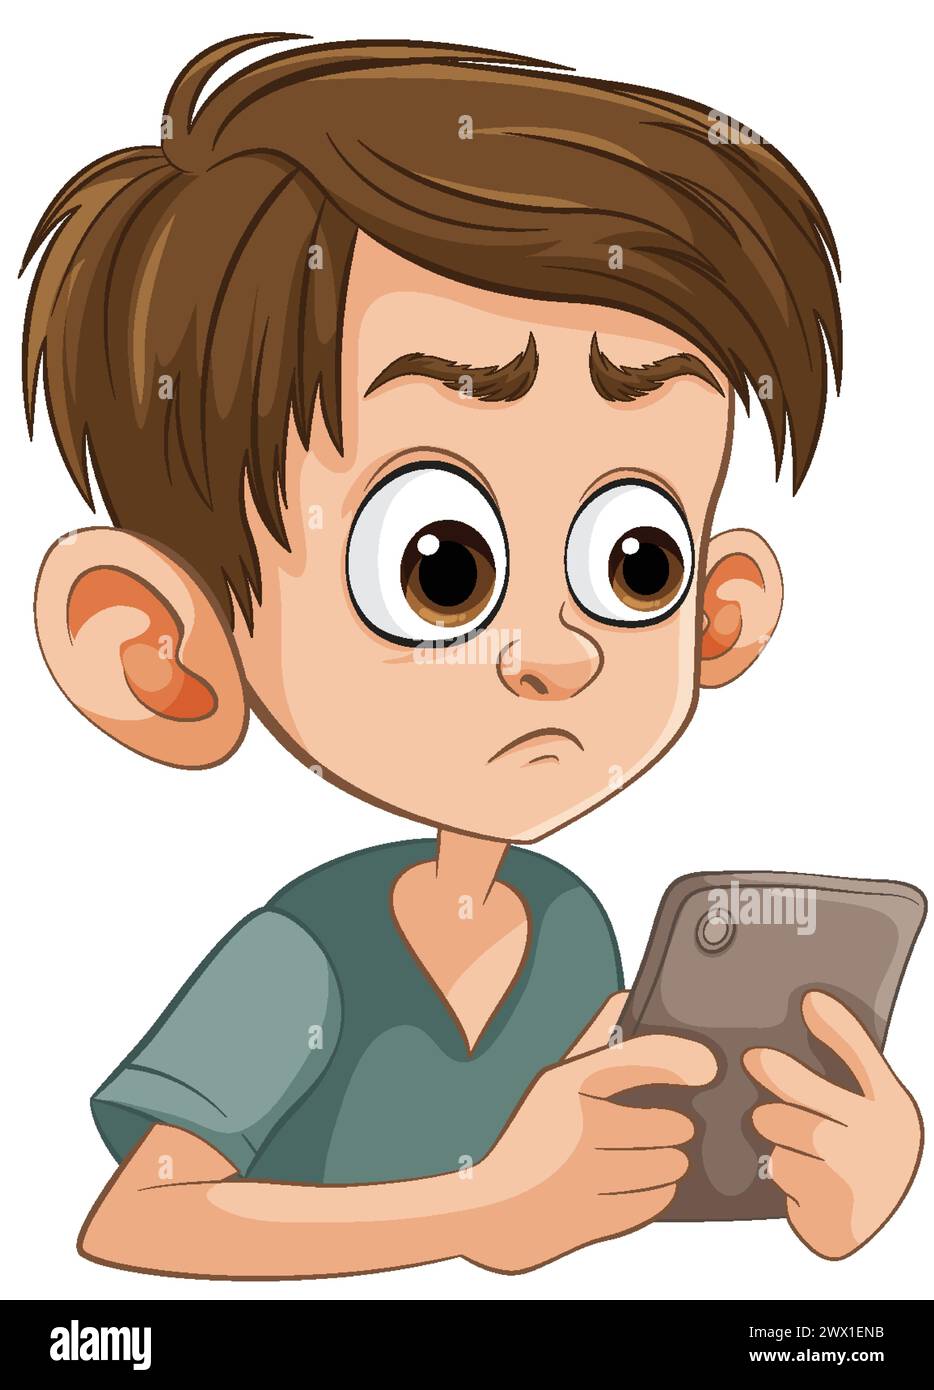 Cartone animato di un ragazzo perplesso che tiene un telefono Illustrazione Vettoriale